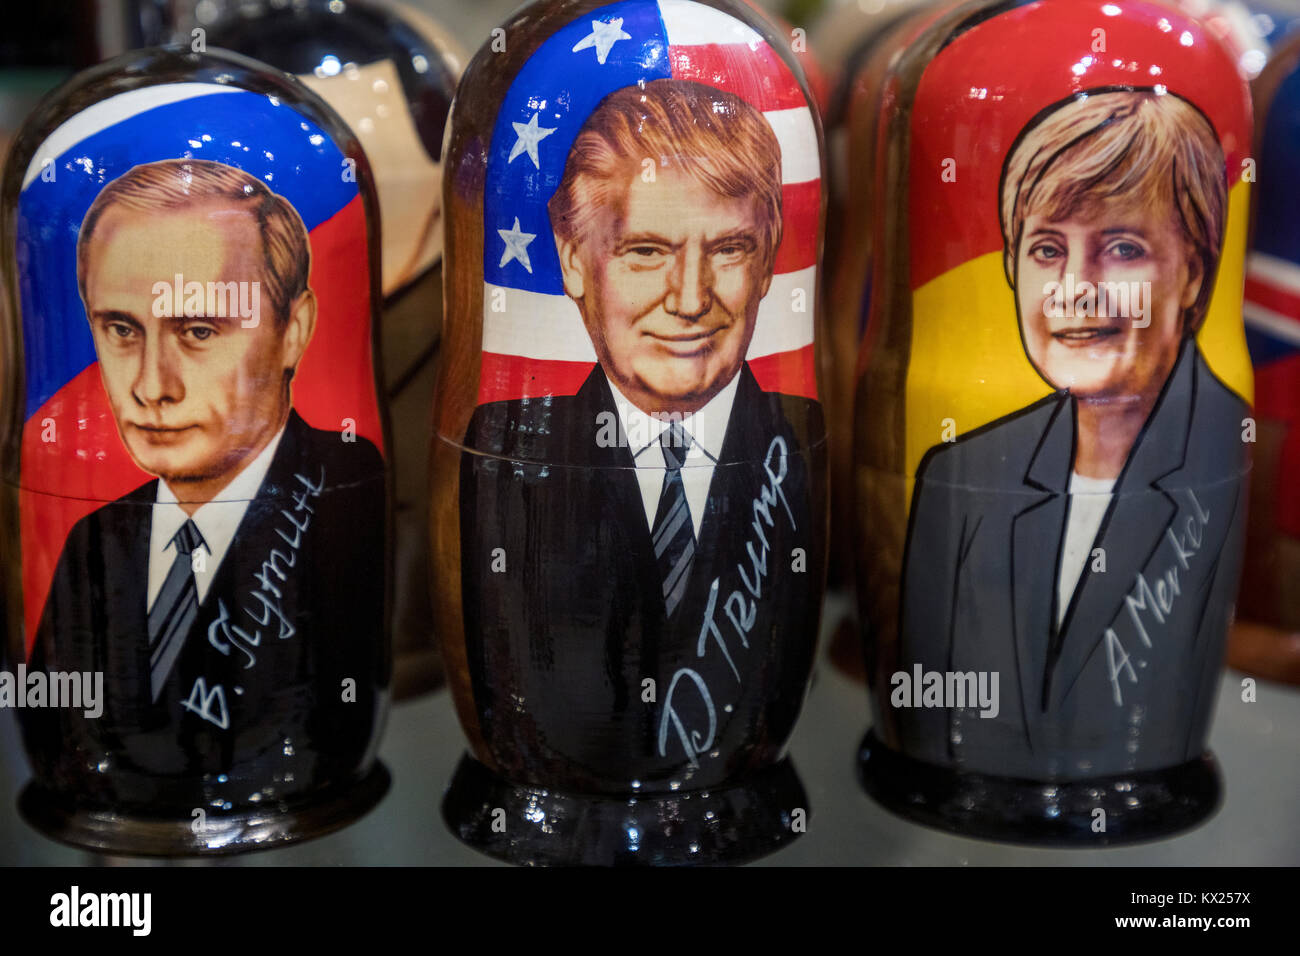 Russischen, amerikanischen, deutschen Führer auf traditionellen Puppen dargestellt - Matrjoschka in Souvenir Kiosk in Moskau, Russland Stockfoto